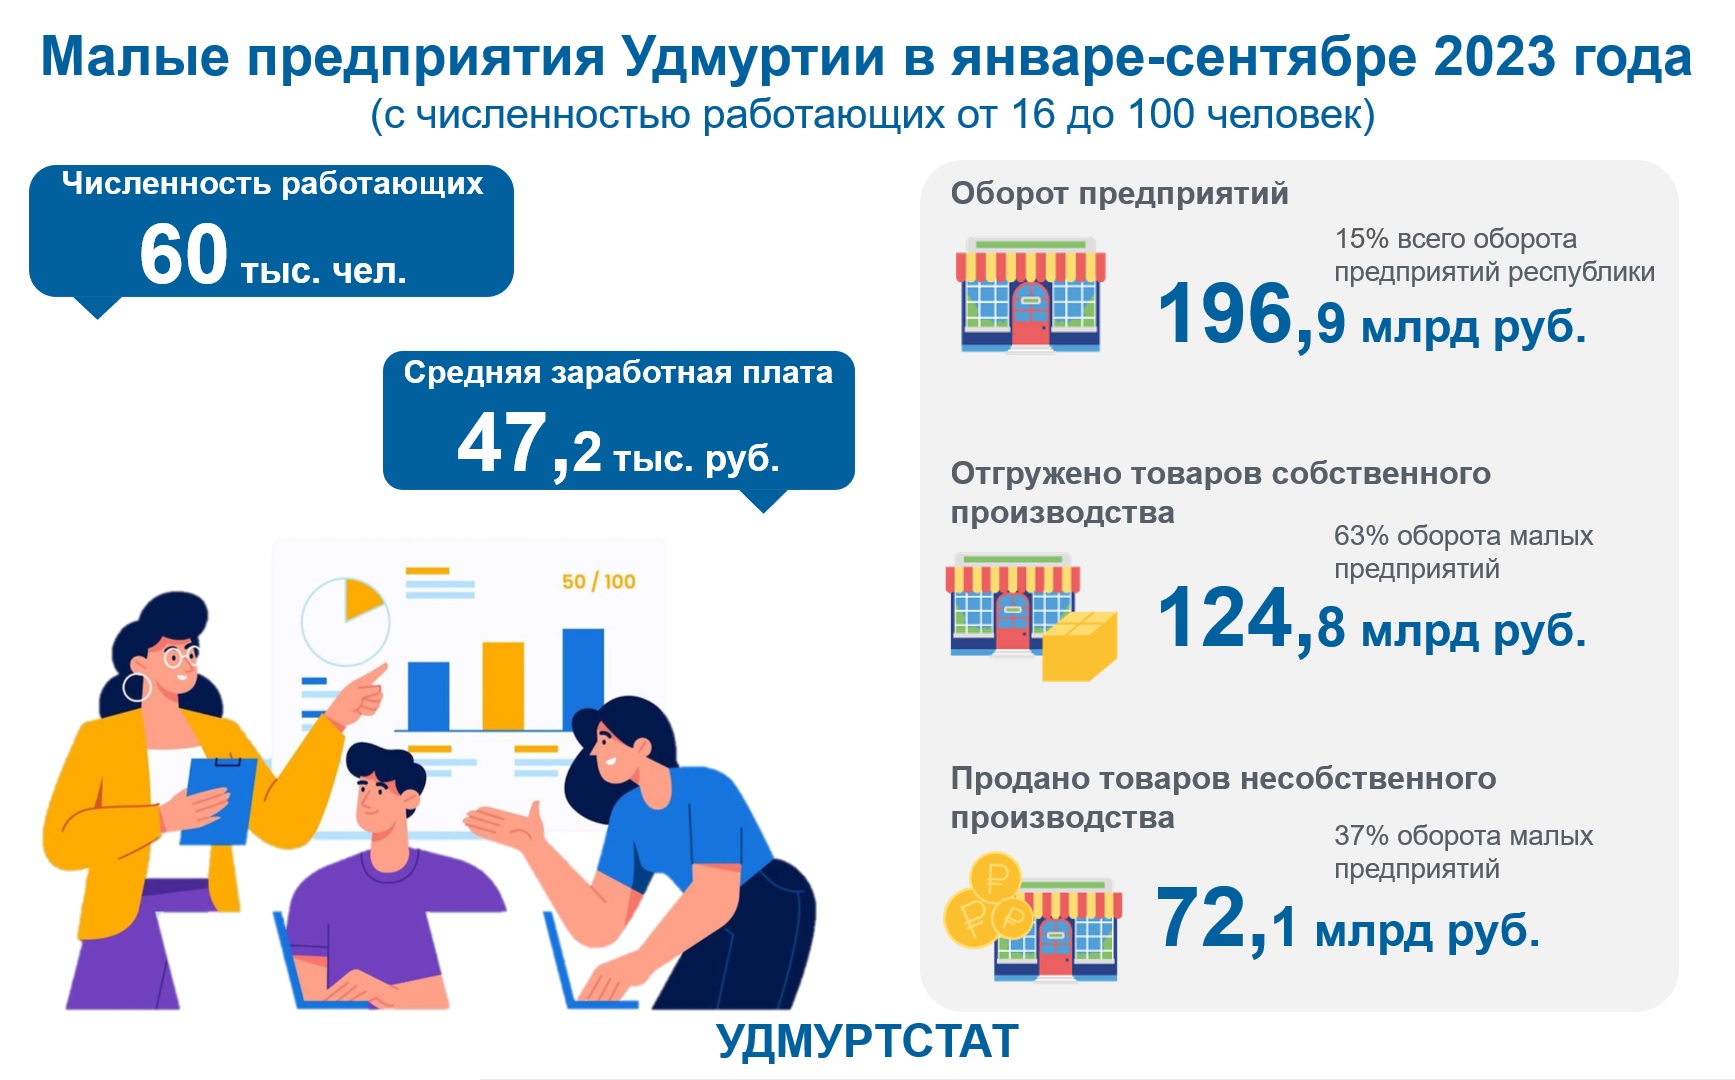 Малые предприятия Удмуртии январь-сентябрь 2023 года.